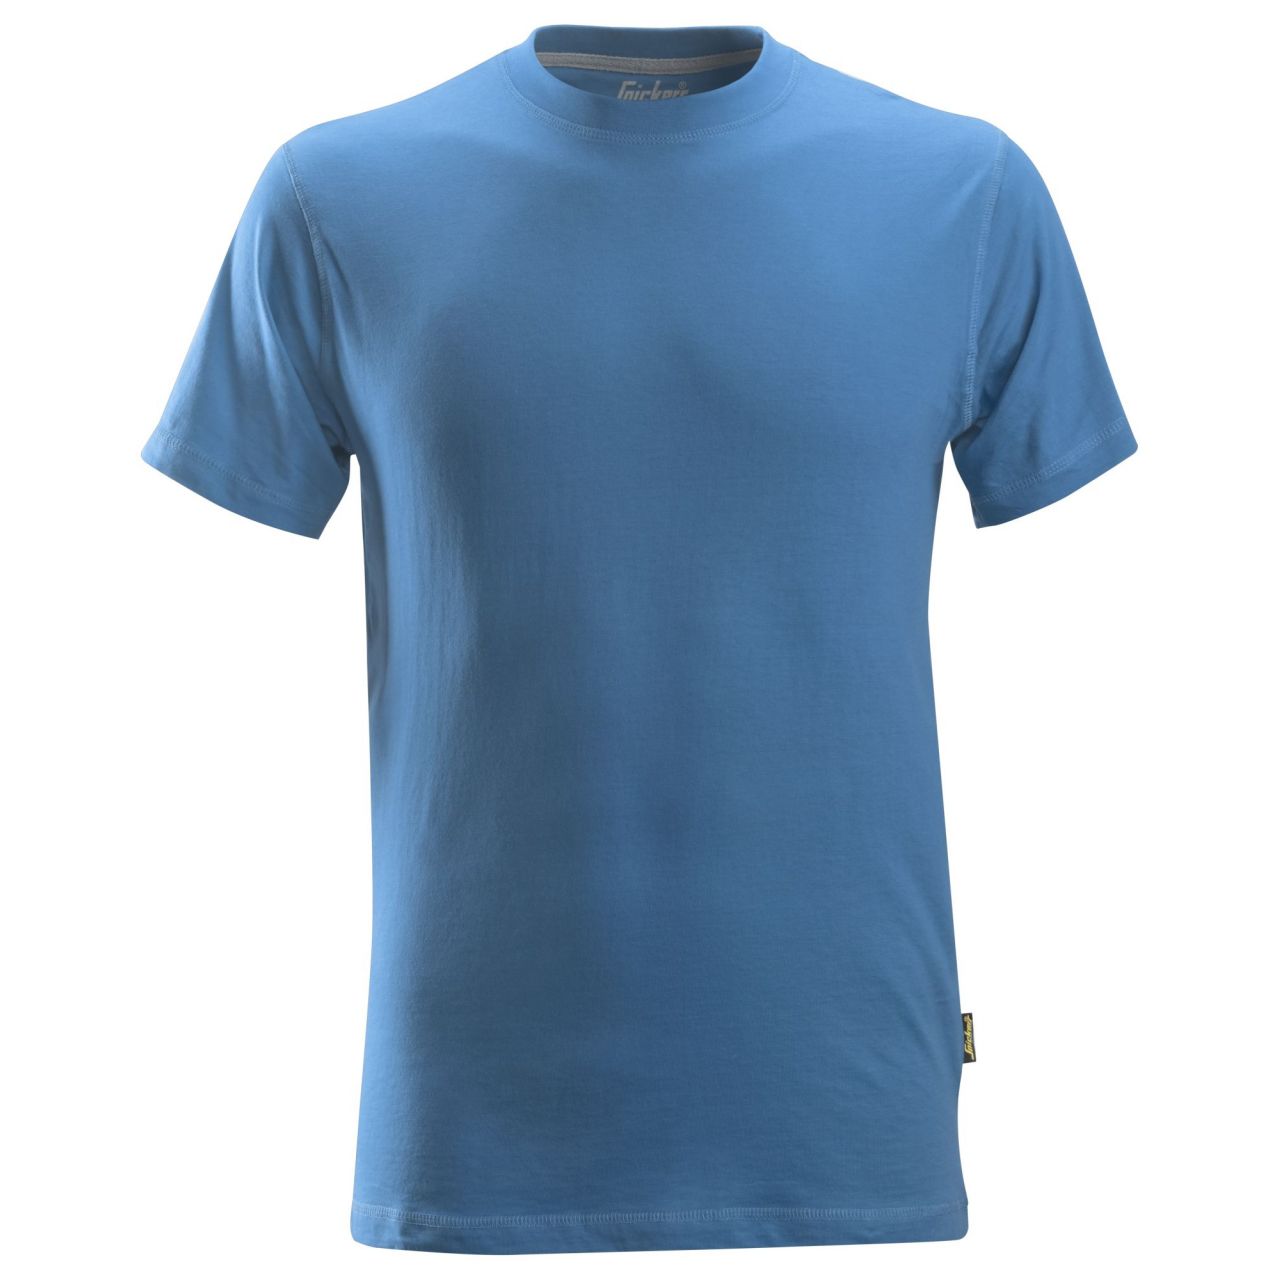 2502 Camiseta azul oceano talla L